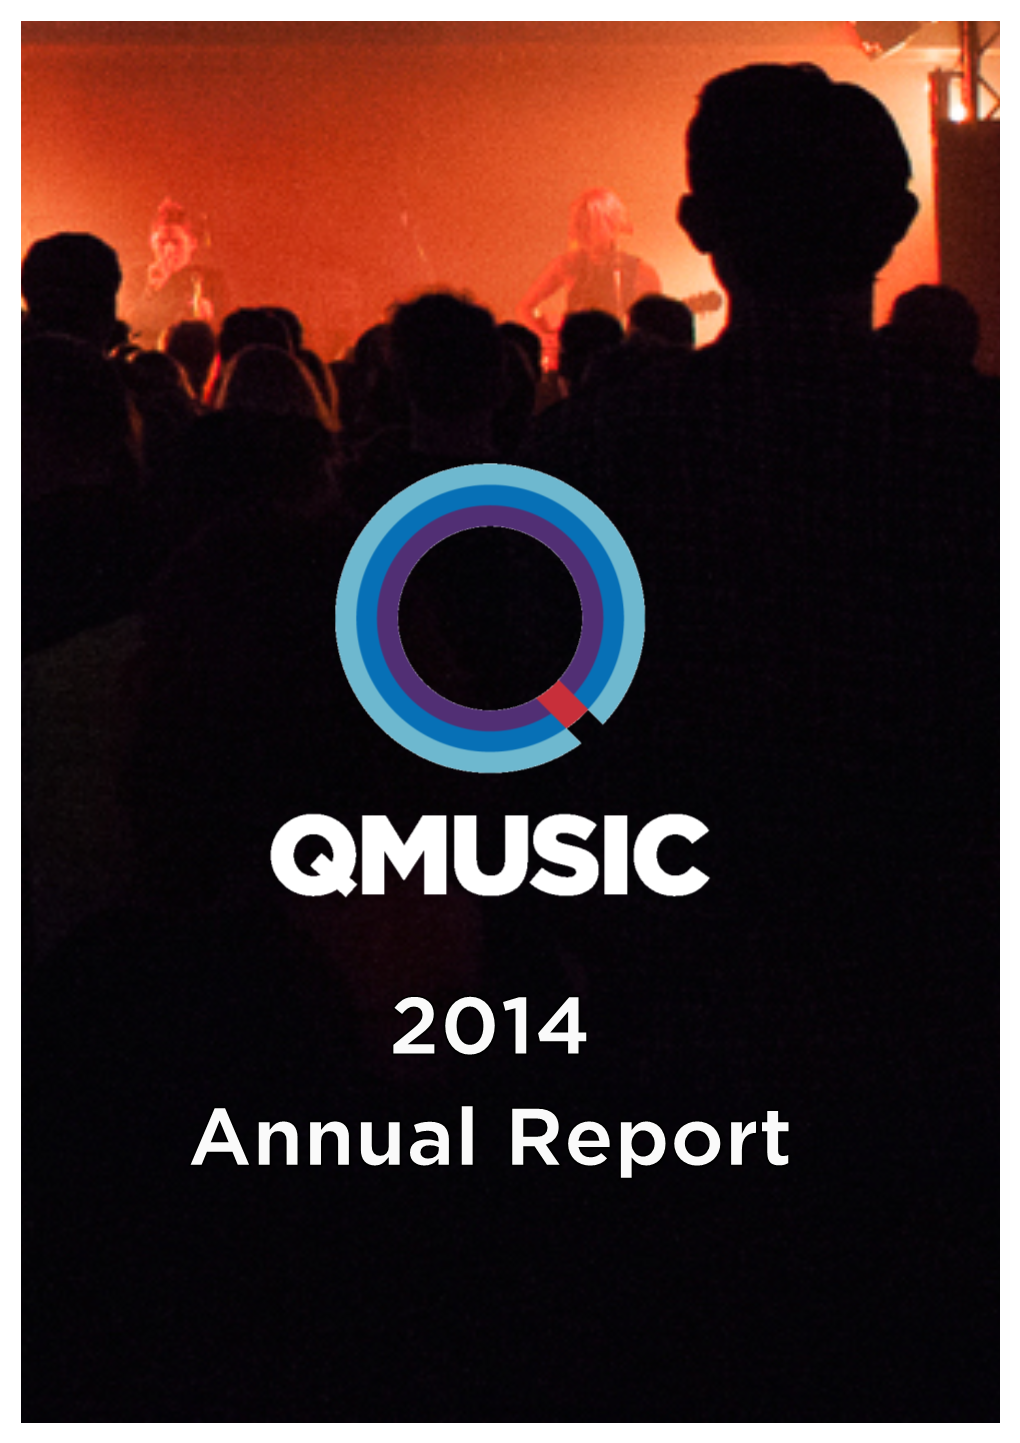 Qmusic Annual Report 2014